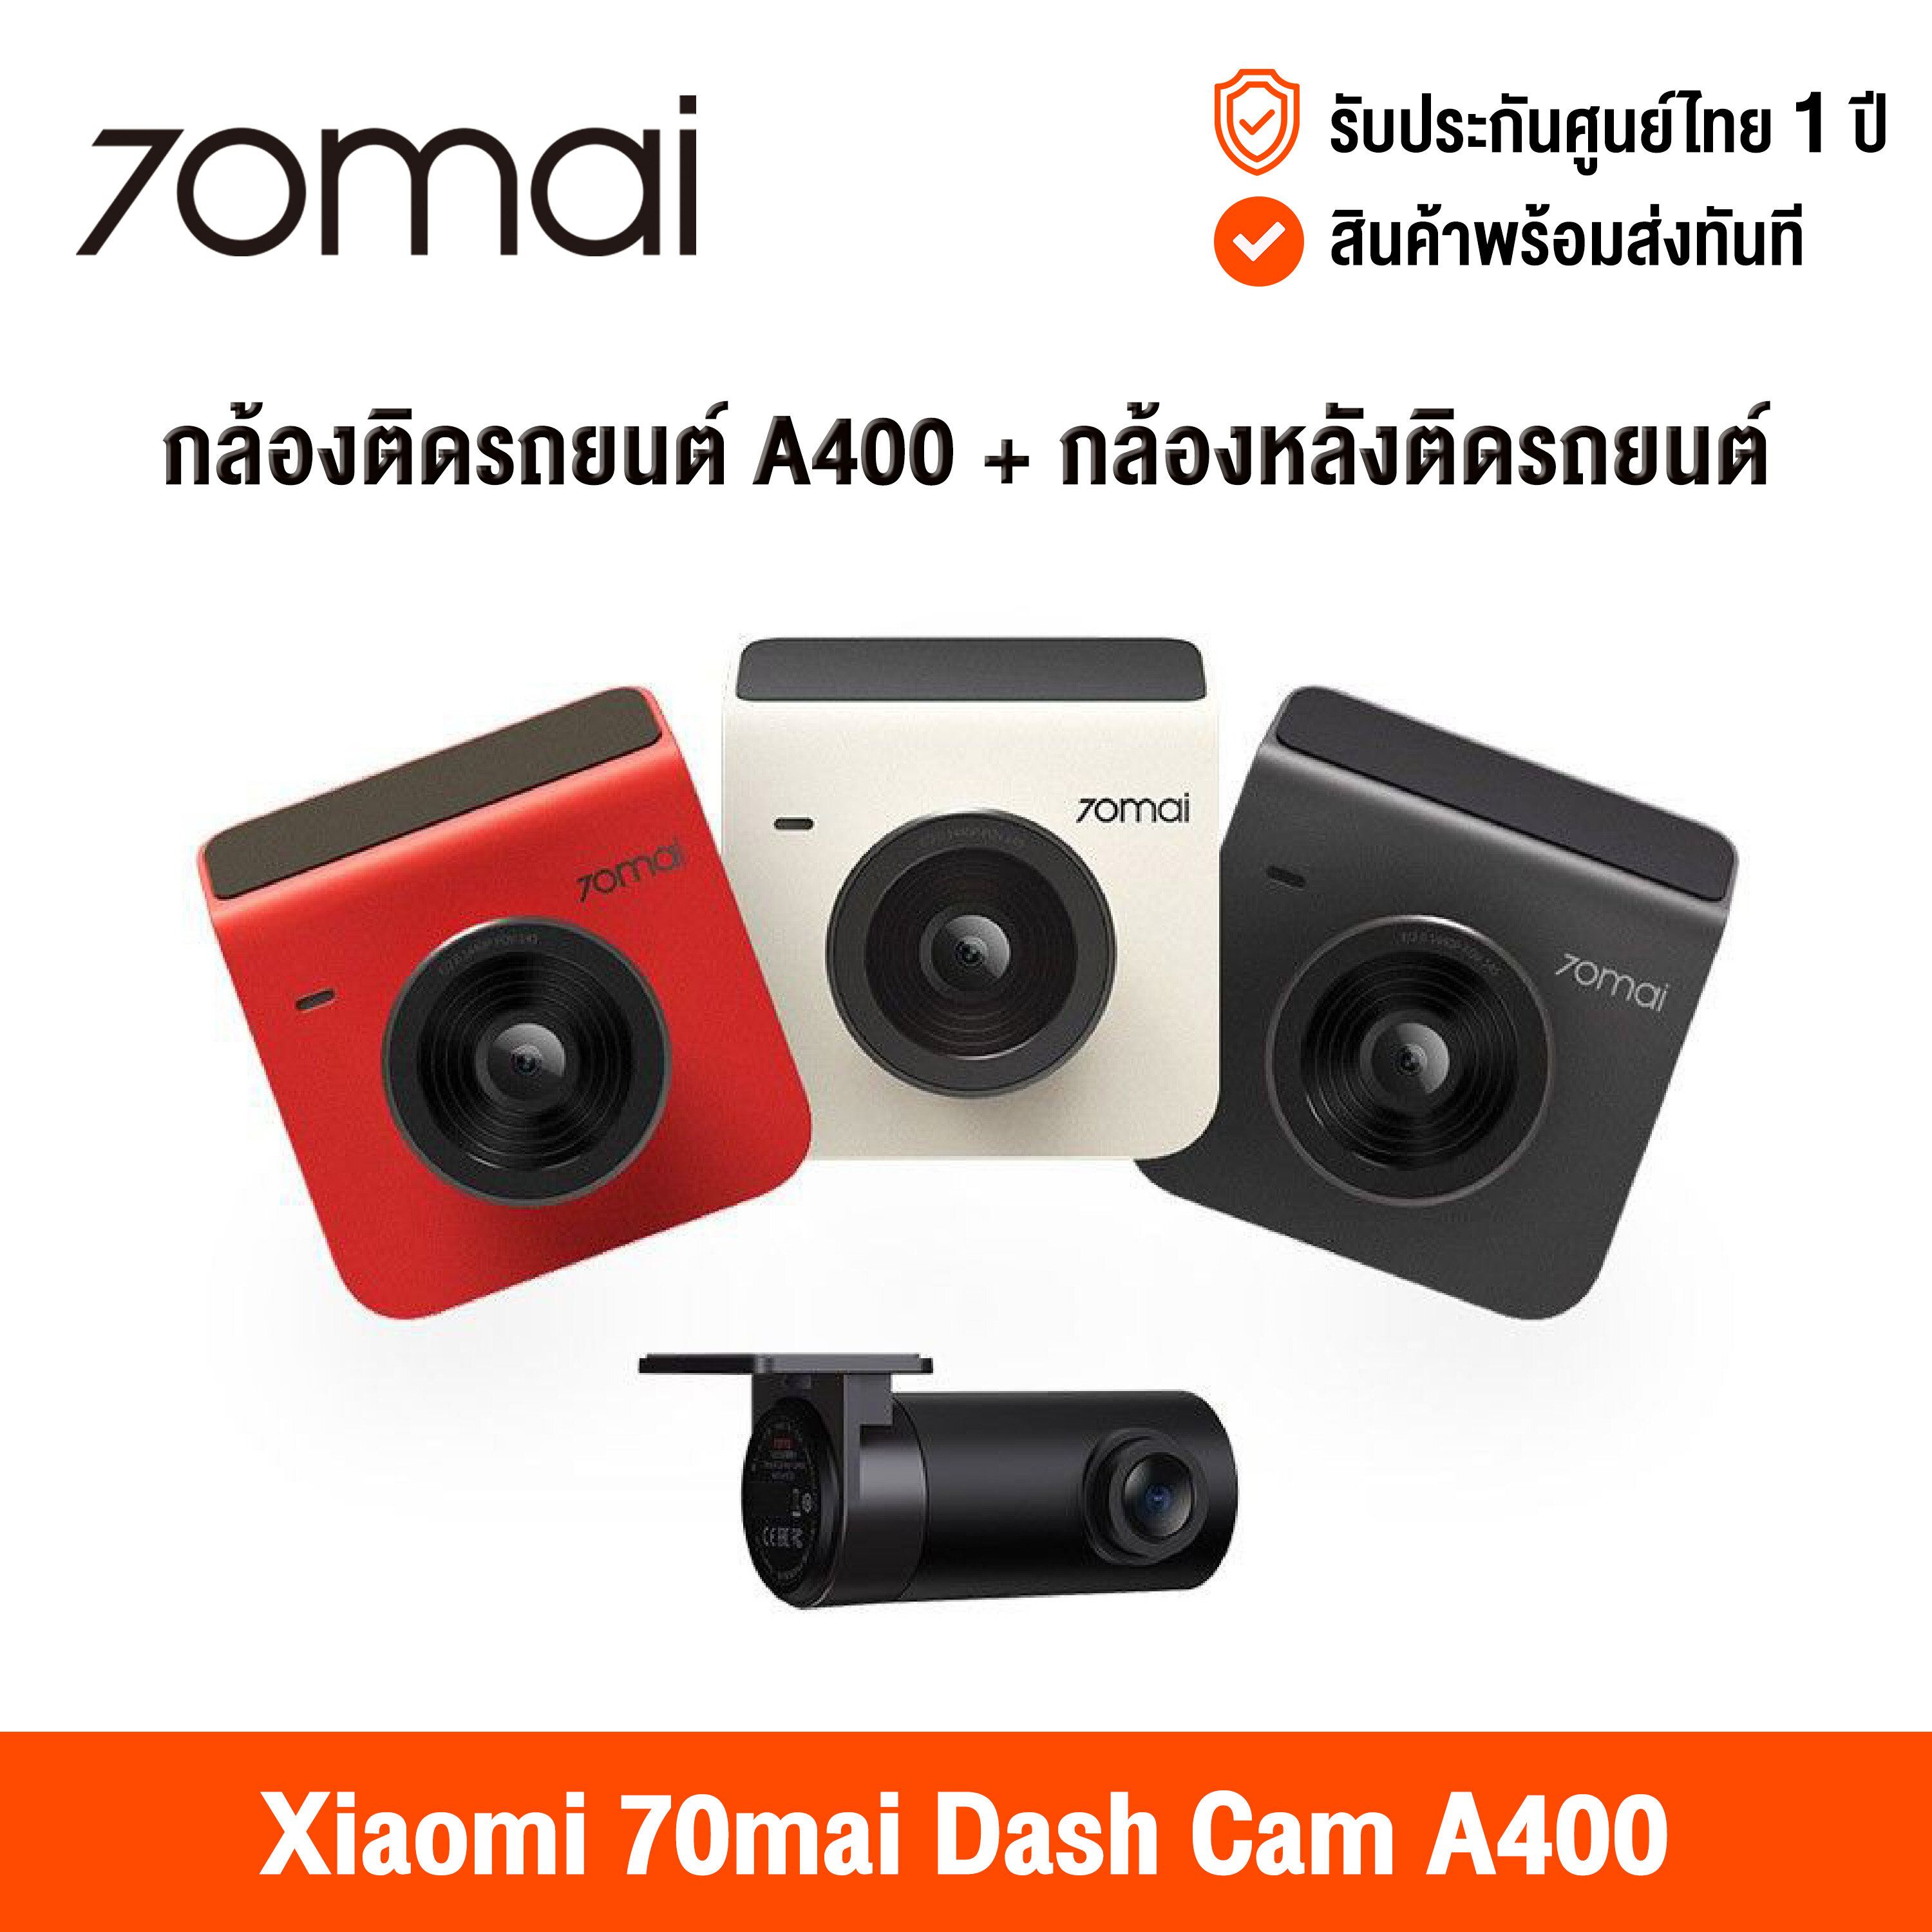 [ศูนย์ไทย] 70mai Dash Cam A400 2K (Global Version) เสี่ยวหมี่ กล้องติดรถยนต์ ความละเอียด 1440P เชื่อมต่อด้วยแอพและ Wifi